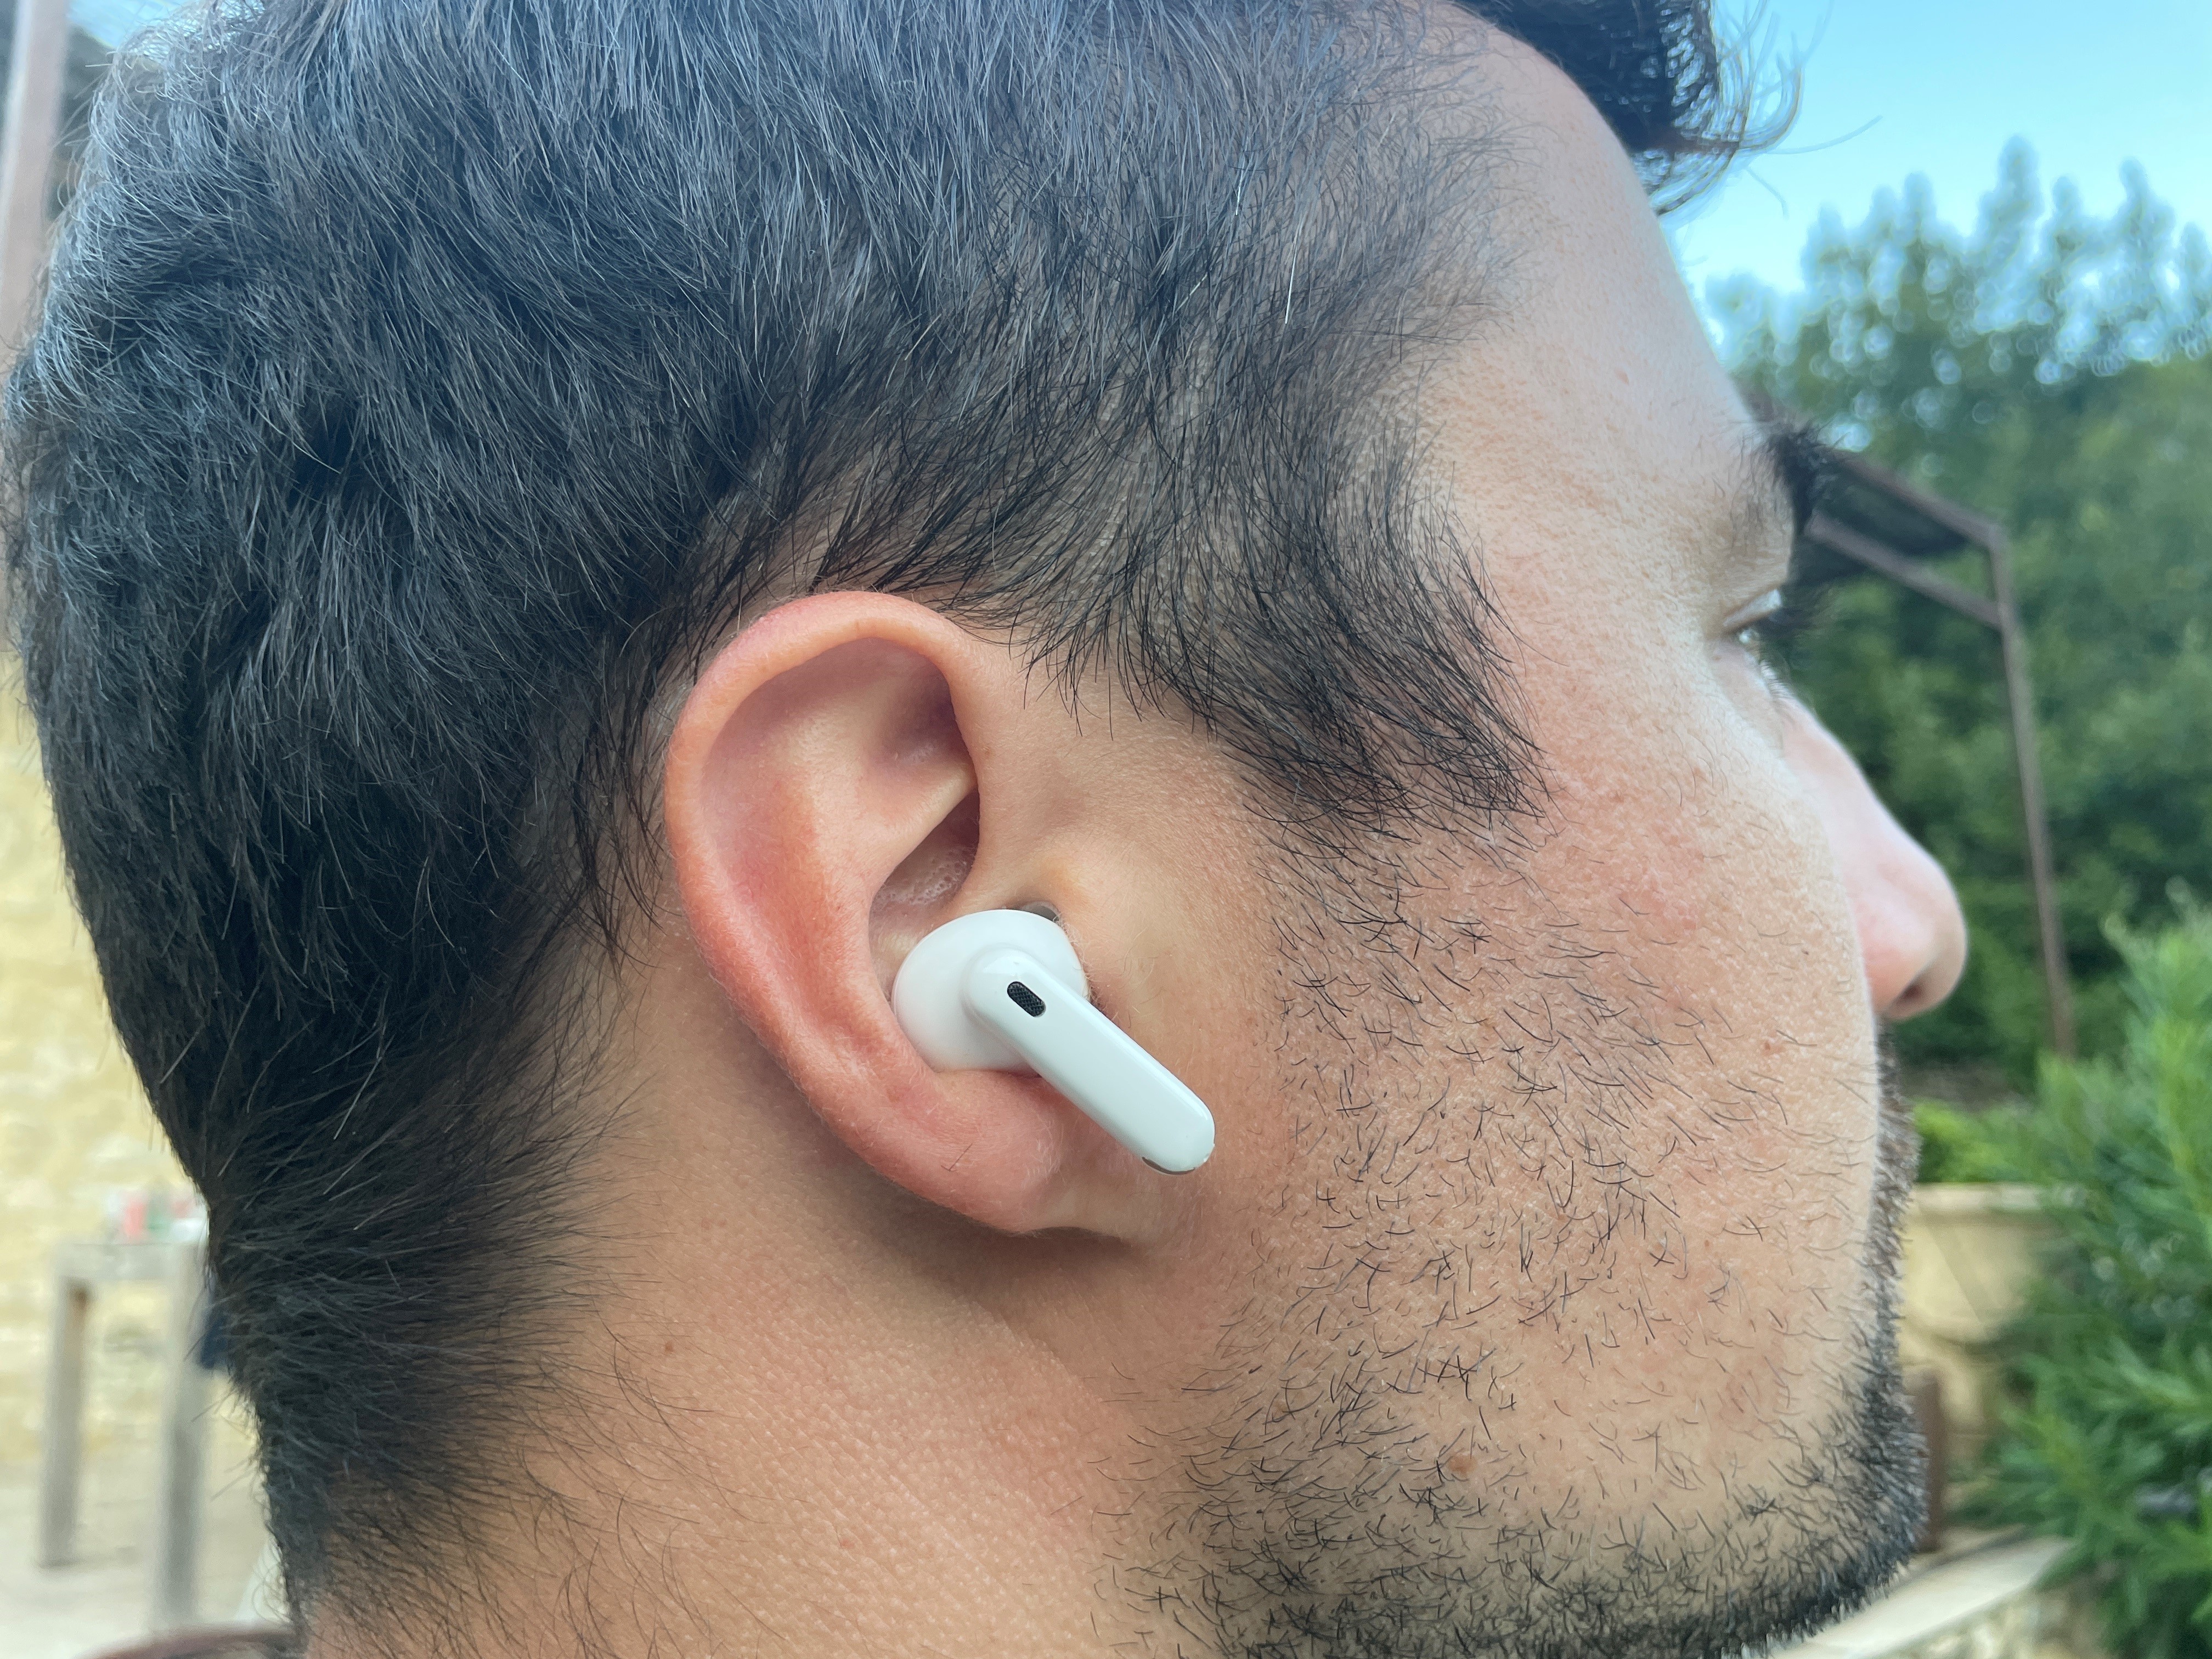 Meilleurs écouteurs Bluetooth 2022 : lesquels acheter pour Noël ?